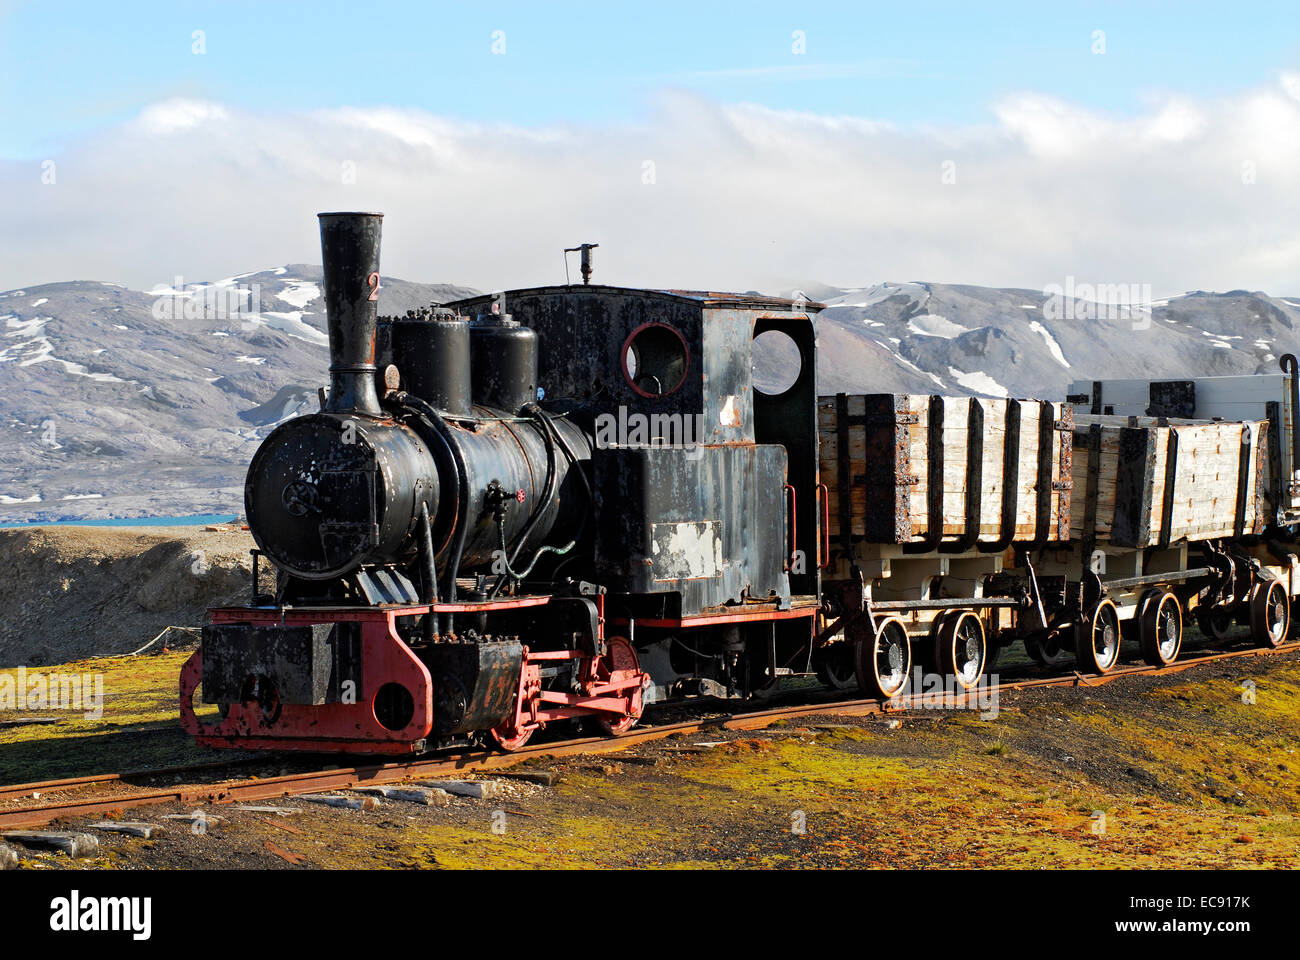 Lo stock foto mostra la miniera aboundoned treno sul display in remoto villaggio di Ny Alesund in Spitzbergen che appartiene alla Norvegia Foto Stock